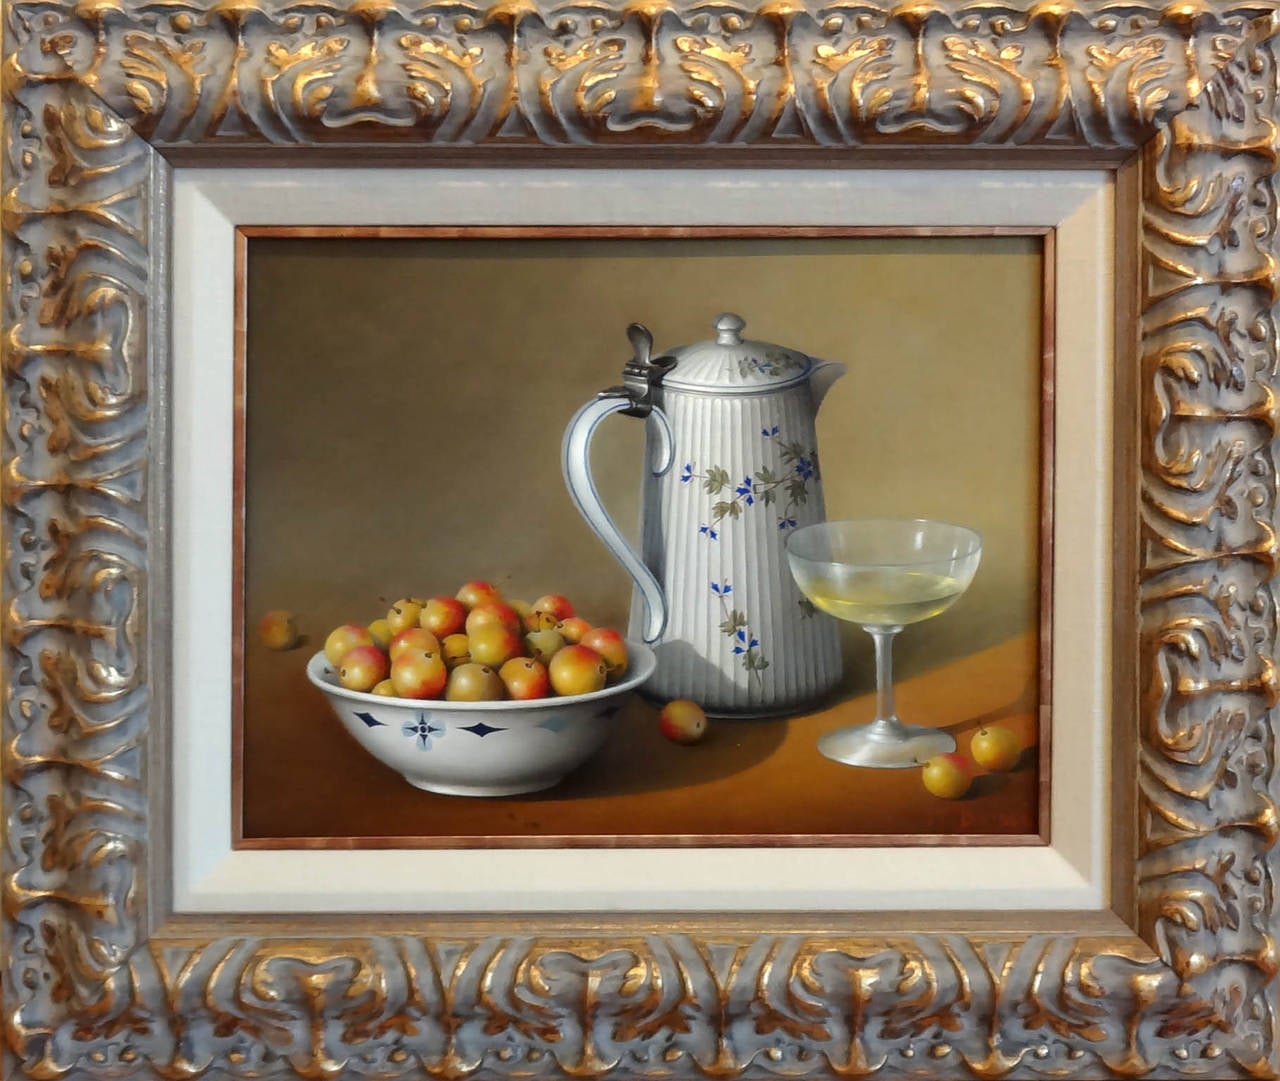 Mirabelles, Pichet, et Verre à Vin - Painting by Jean-Yves Boissé